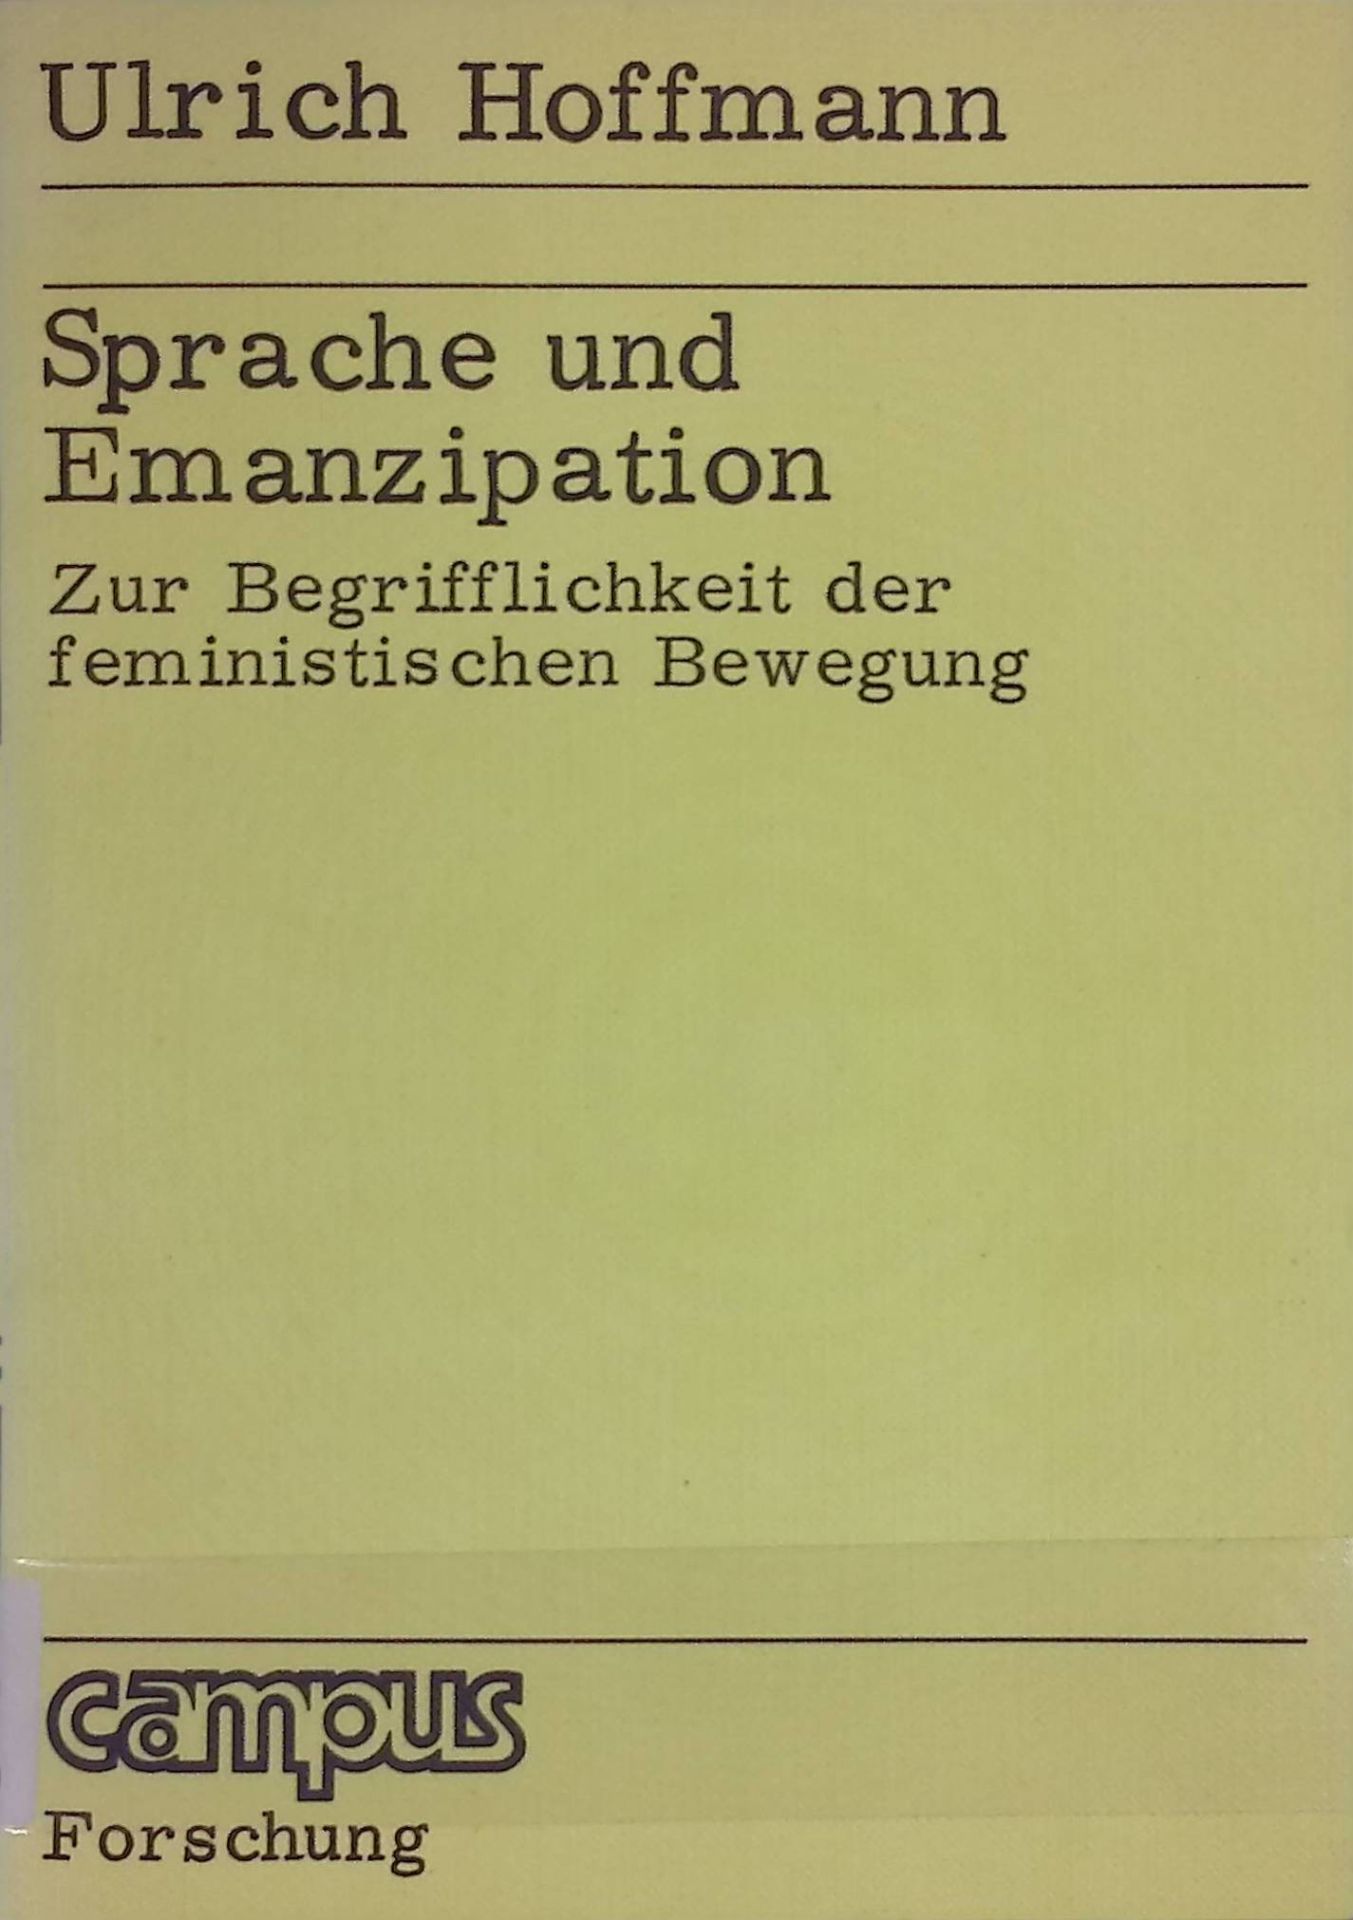 Sprache und Emanzipation : zur Begrifflichkeit d. feminist. Bewegung. Campus ; Bd. 89 - Hoffmann, Ulrich